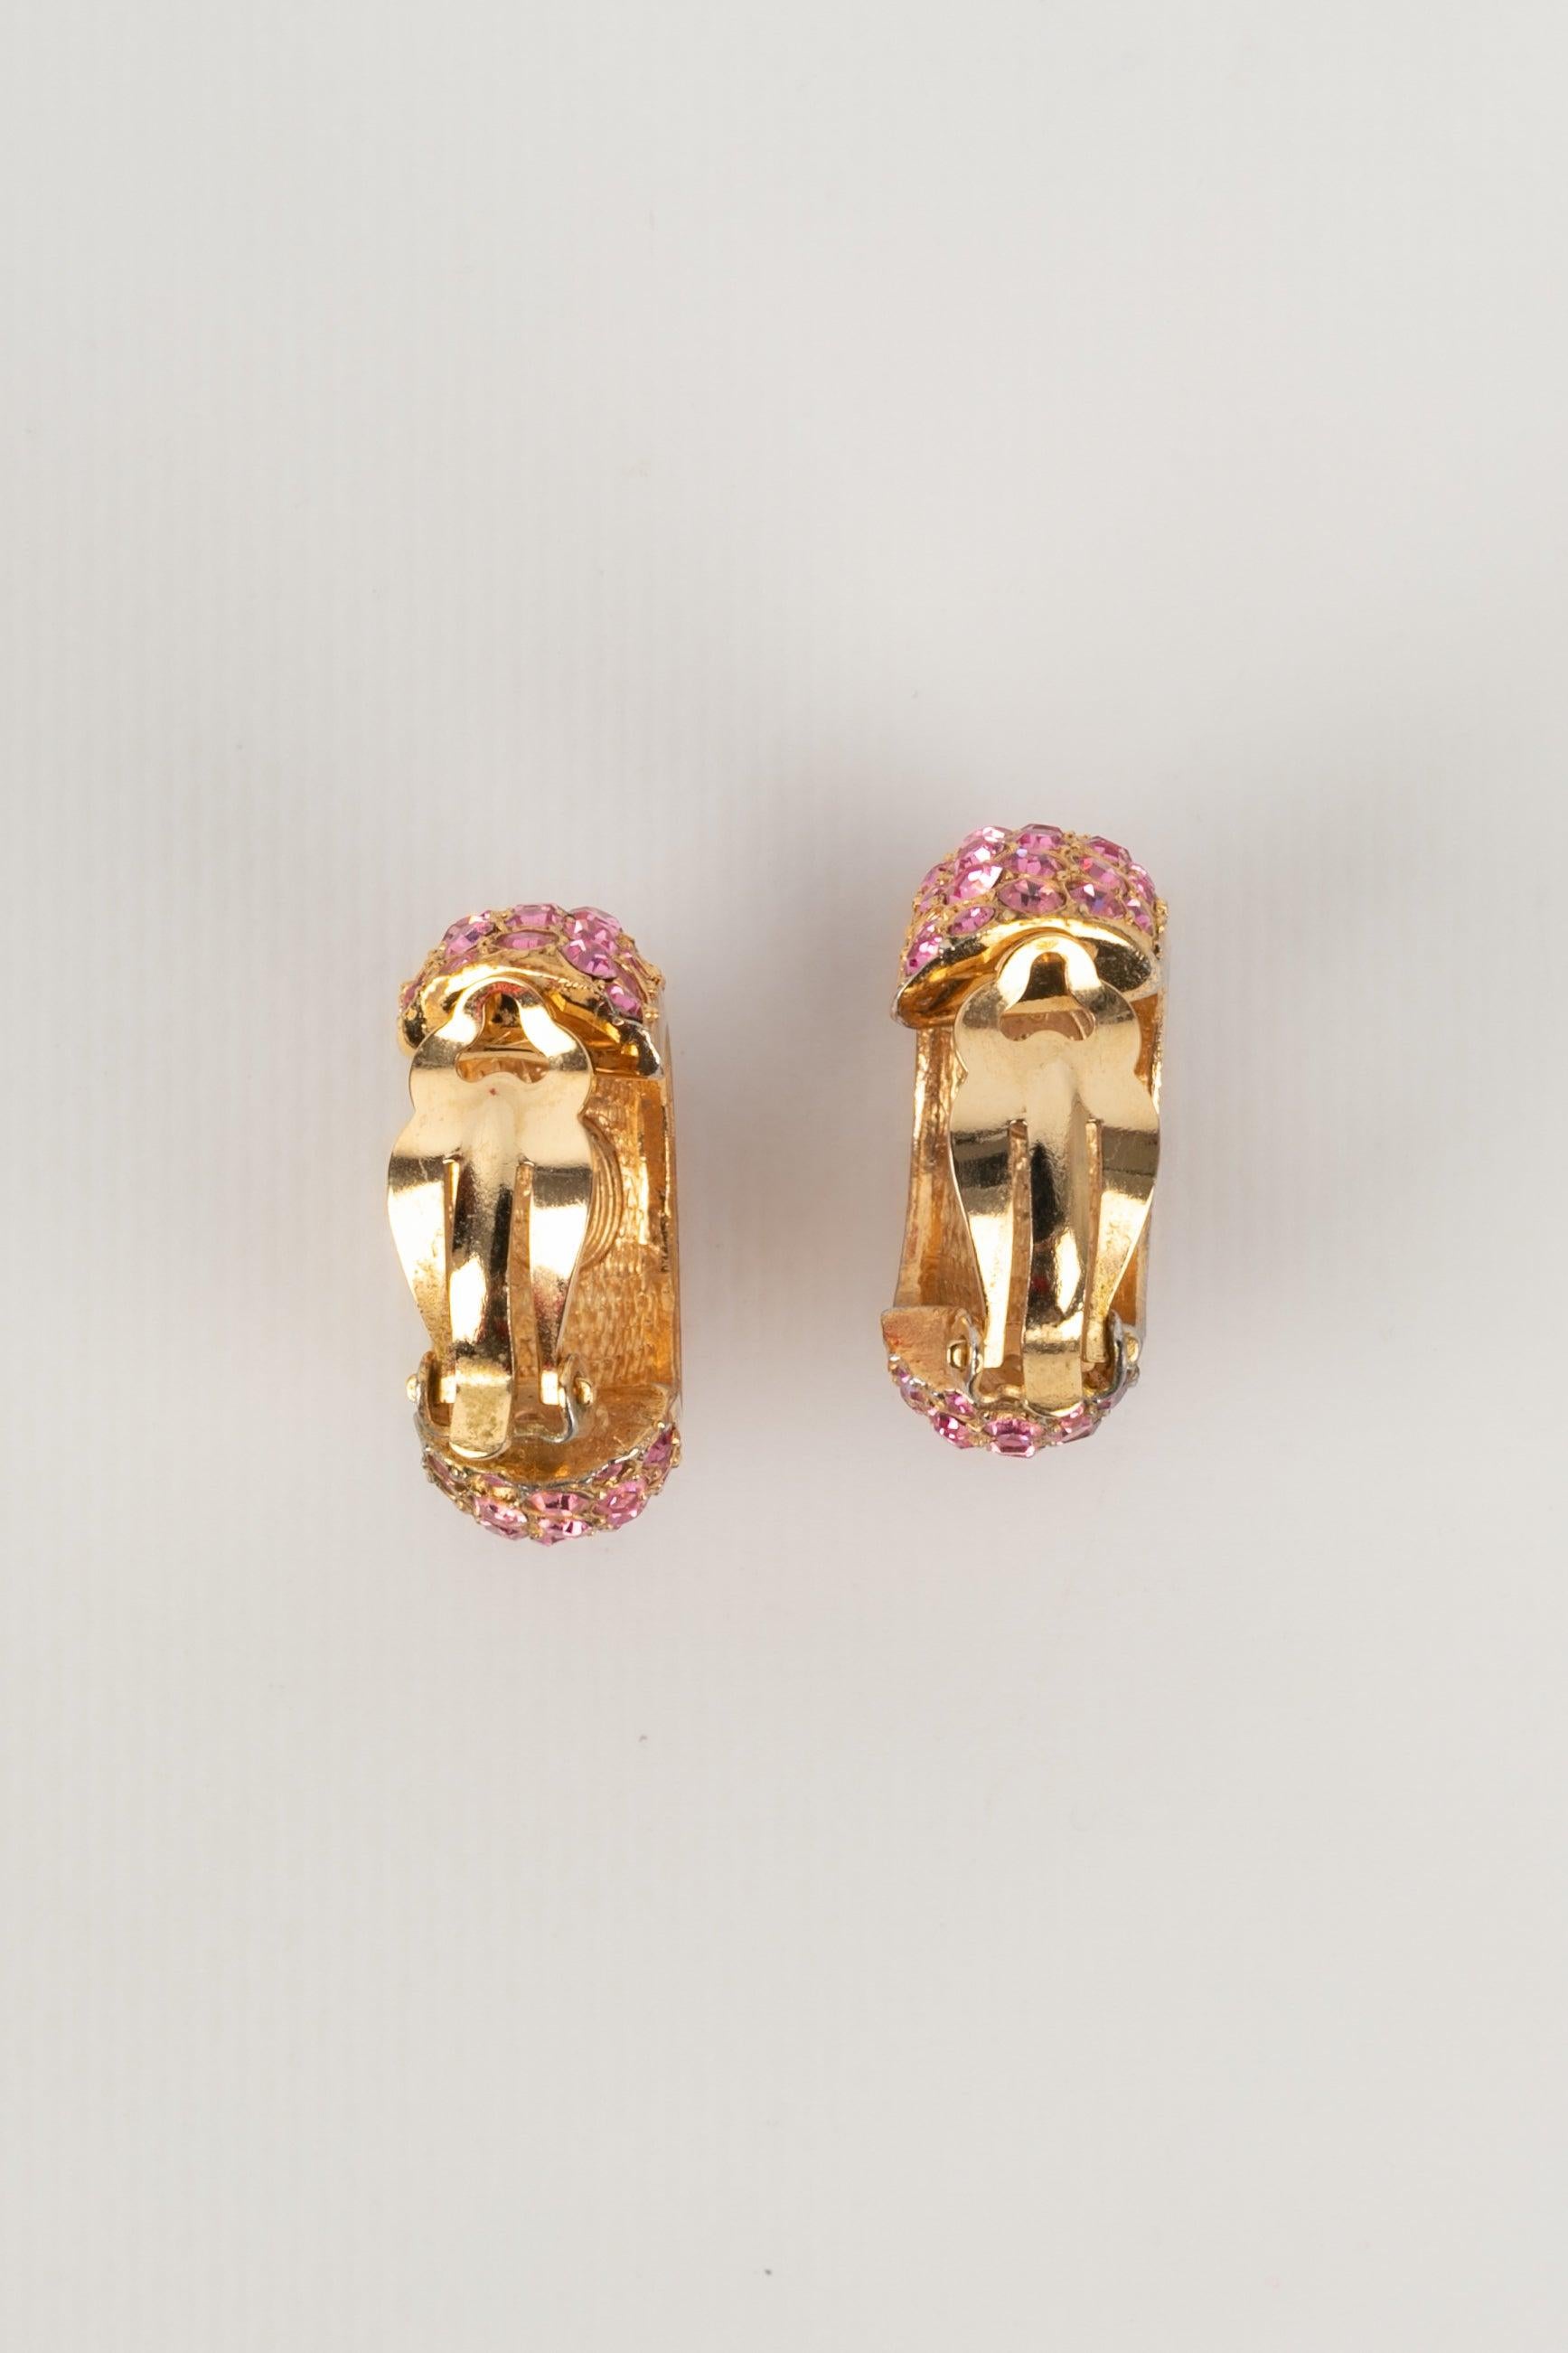 Christian Dior - Goldene Ohrringe aus Metall, verziert mit rosa Strasssteinen.

Zusätzliche Informationen:
Zustand: Sehr guter Zustand
Abmessungen: Höhe: 3,5 cm

Referenz des Sellers: BO62
